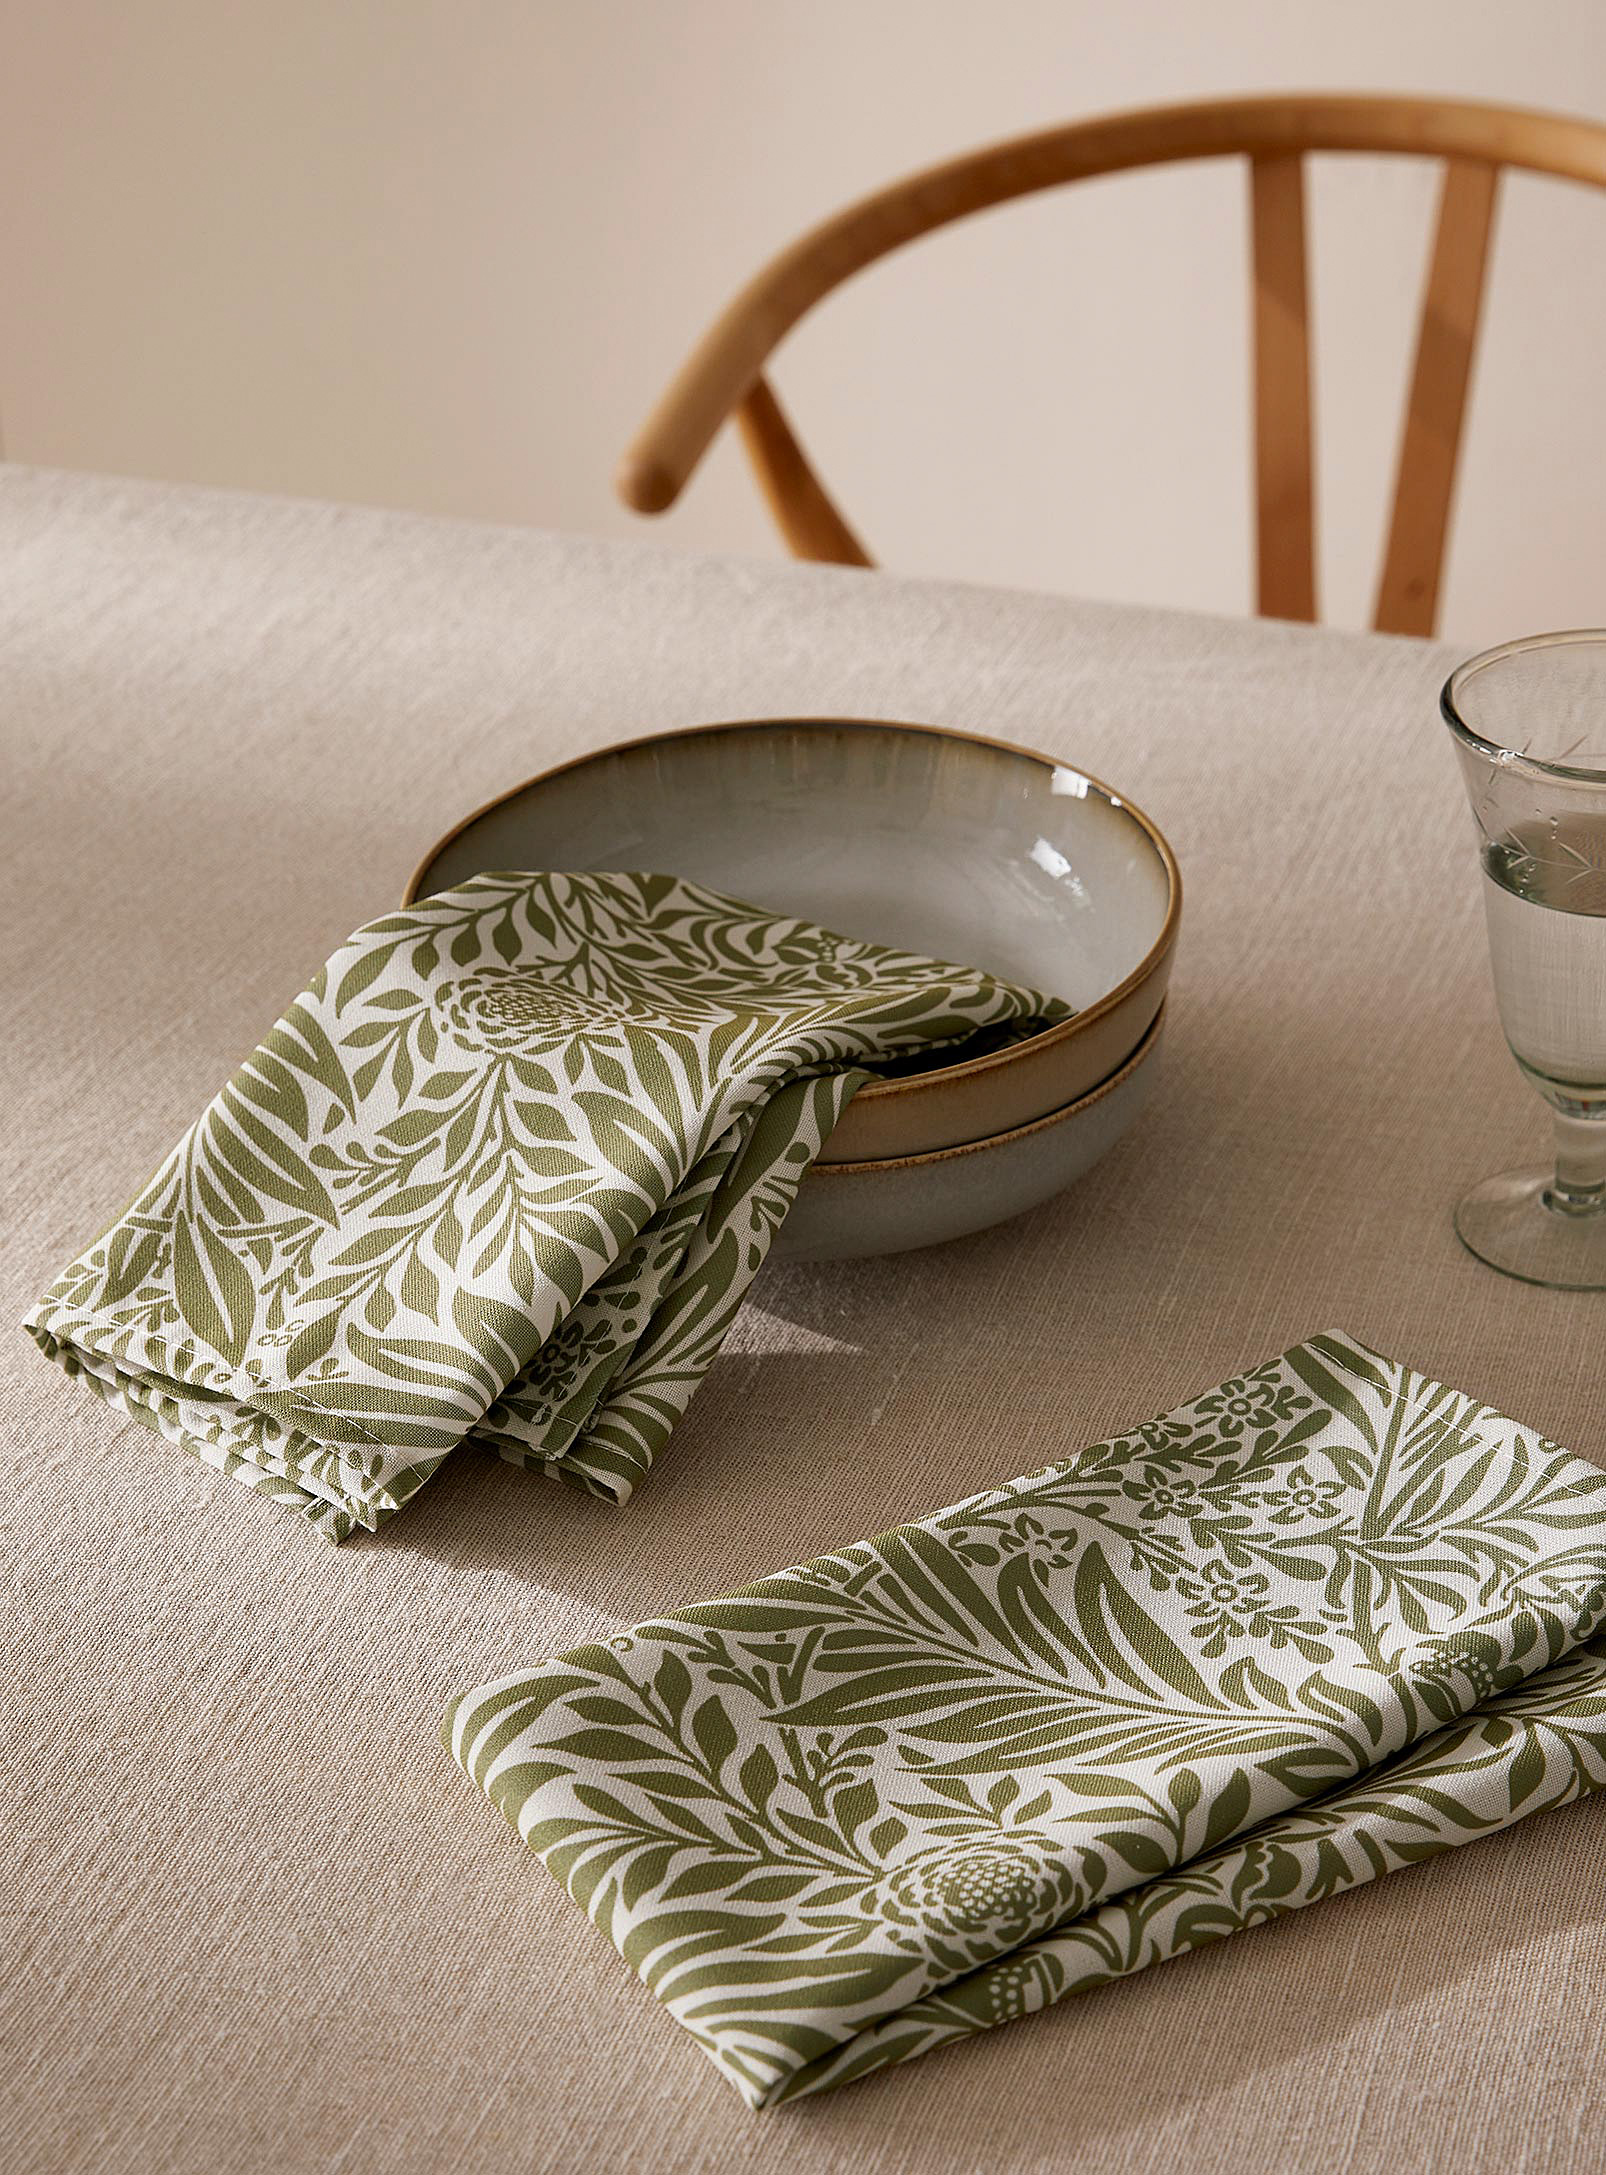 Simons Maison - Les serviettes de table polyester recyclé feuillage luxuriant Ensemble de 2